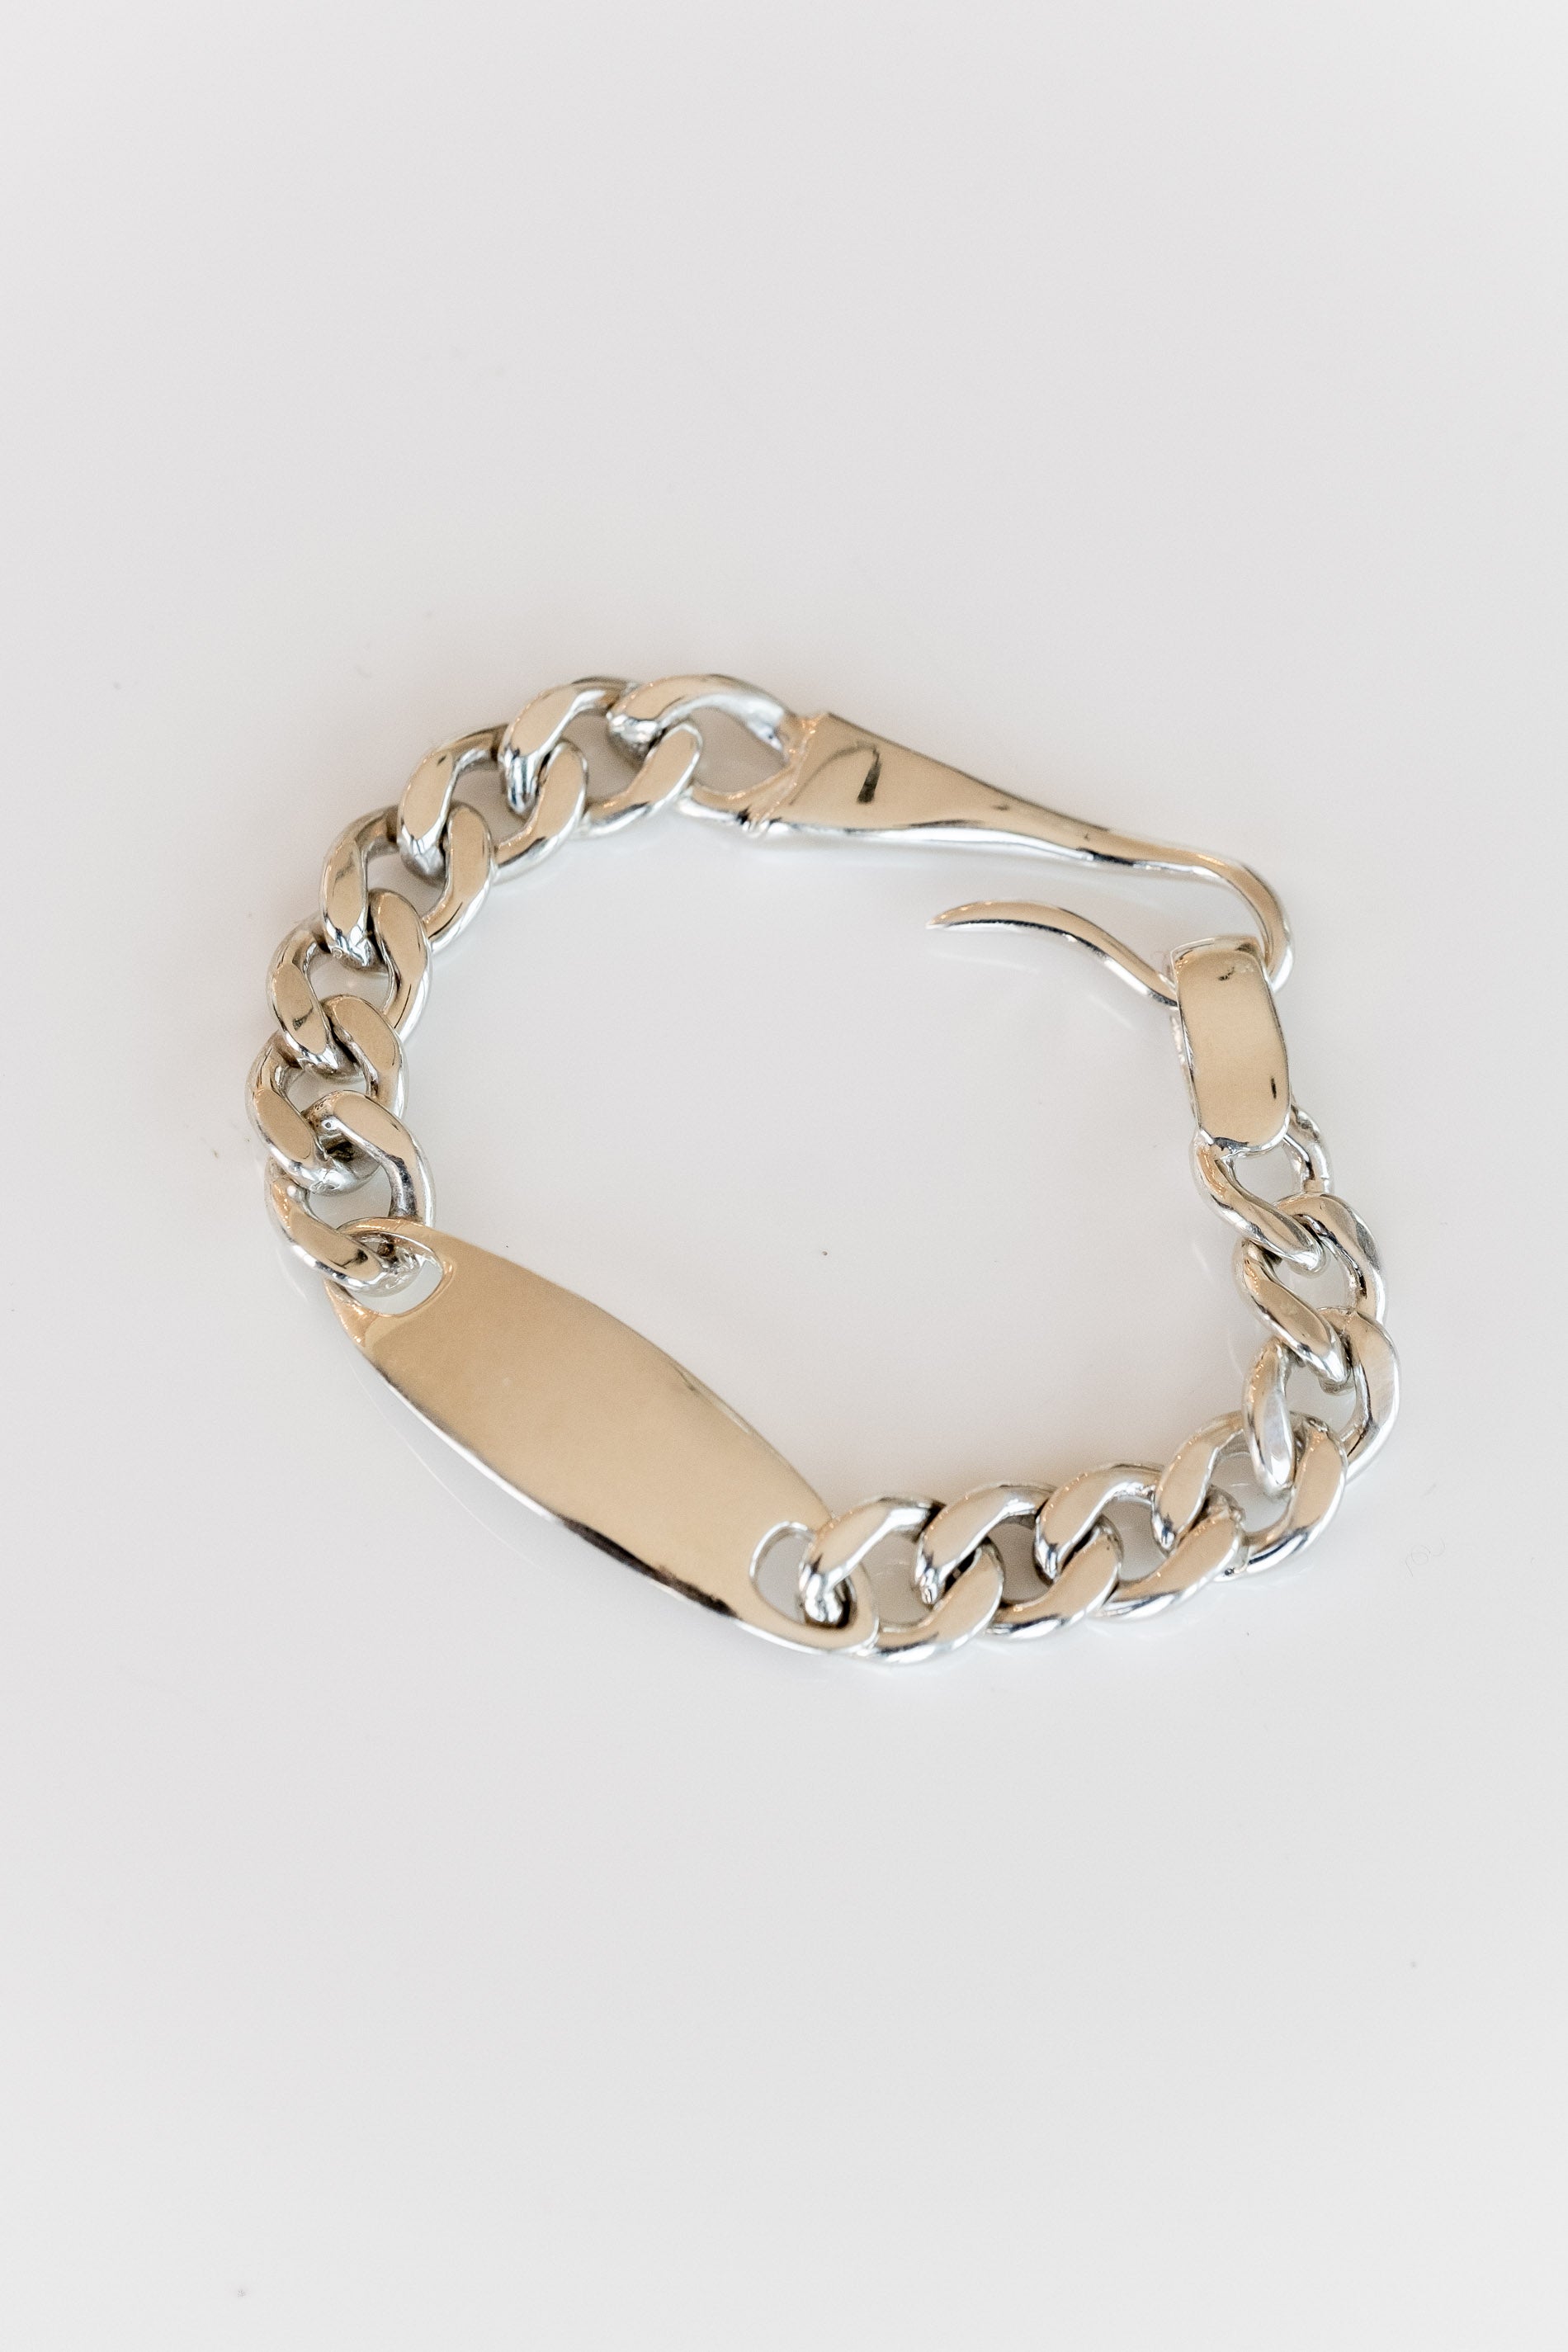 Hook Bracelet by Hernán Herdez | Jeryco Store